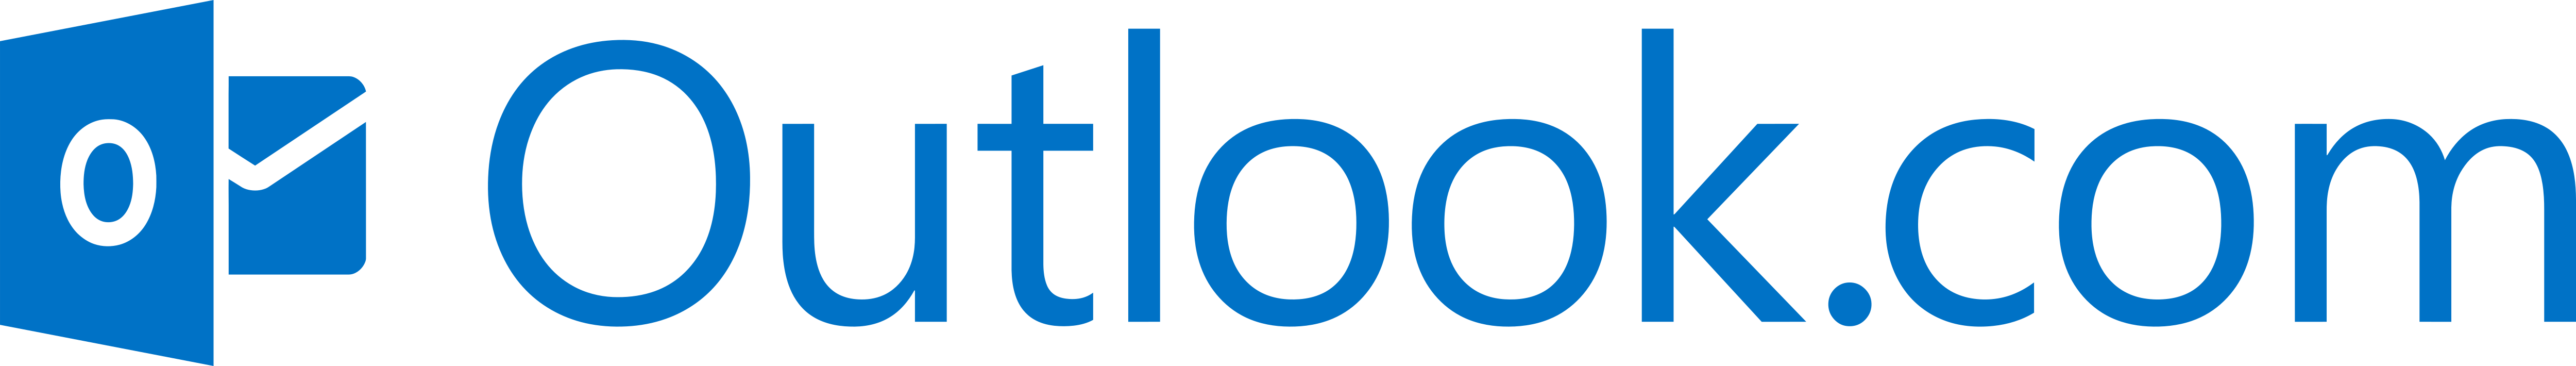 microsoft outlook logo 2015